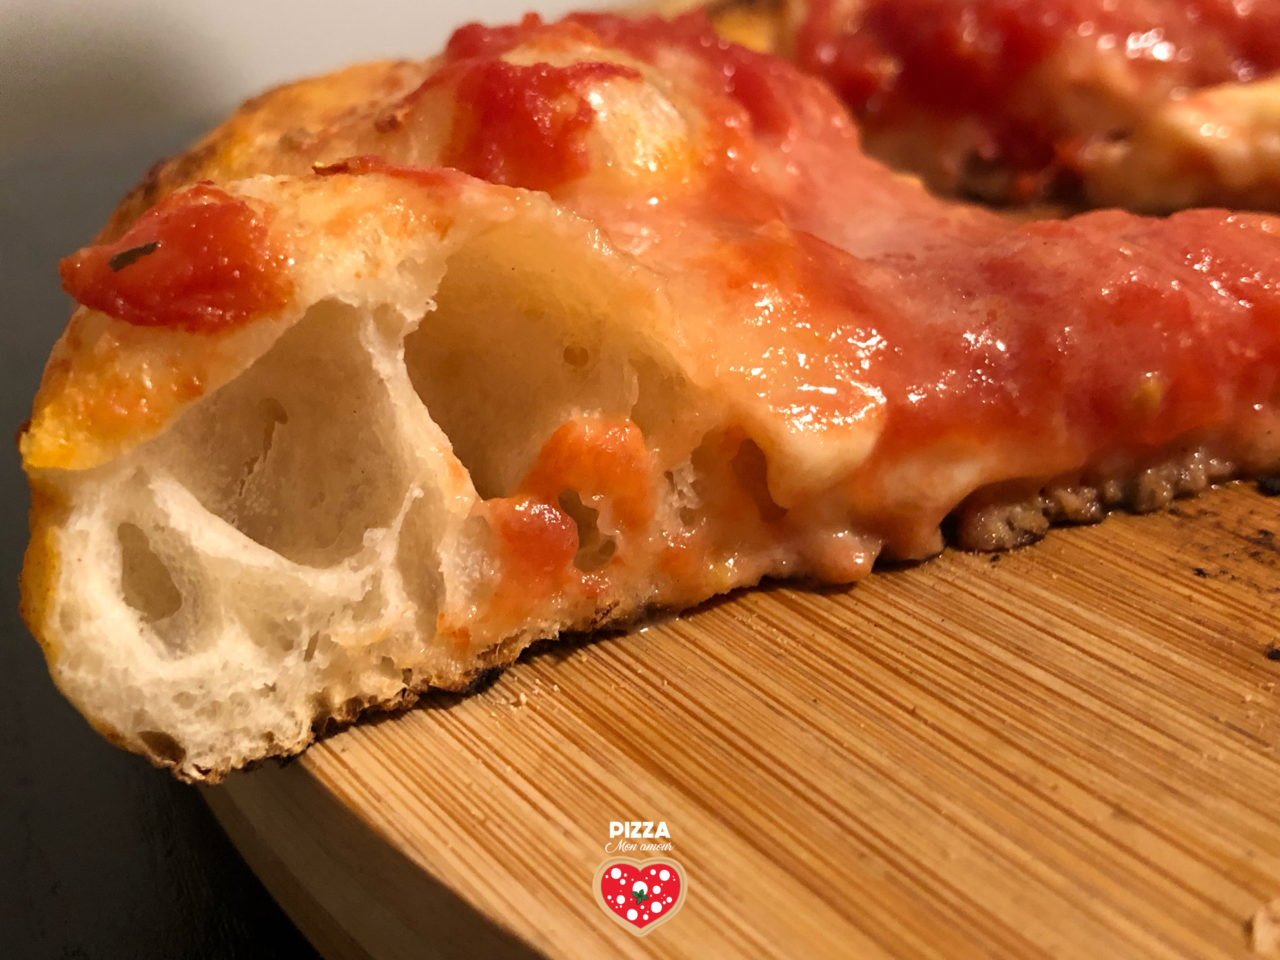 Pizza napoletana fatta in casa, la ricetta - Pizza Mon Amour